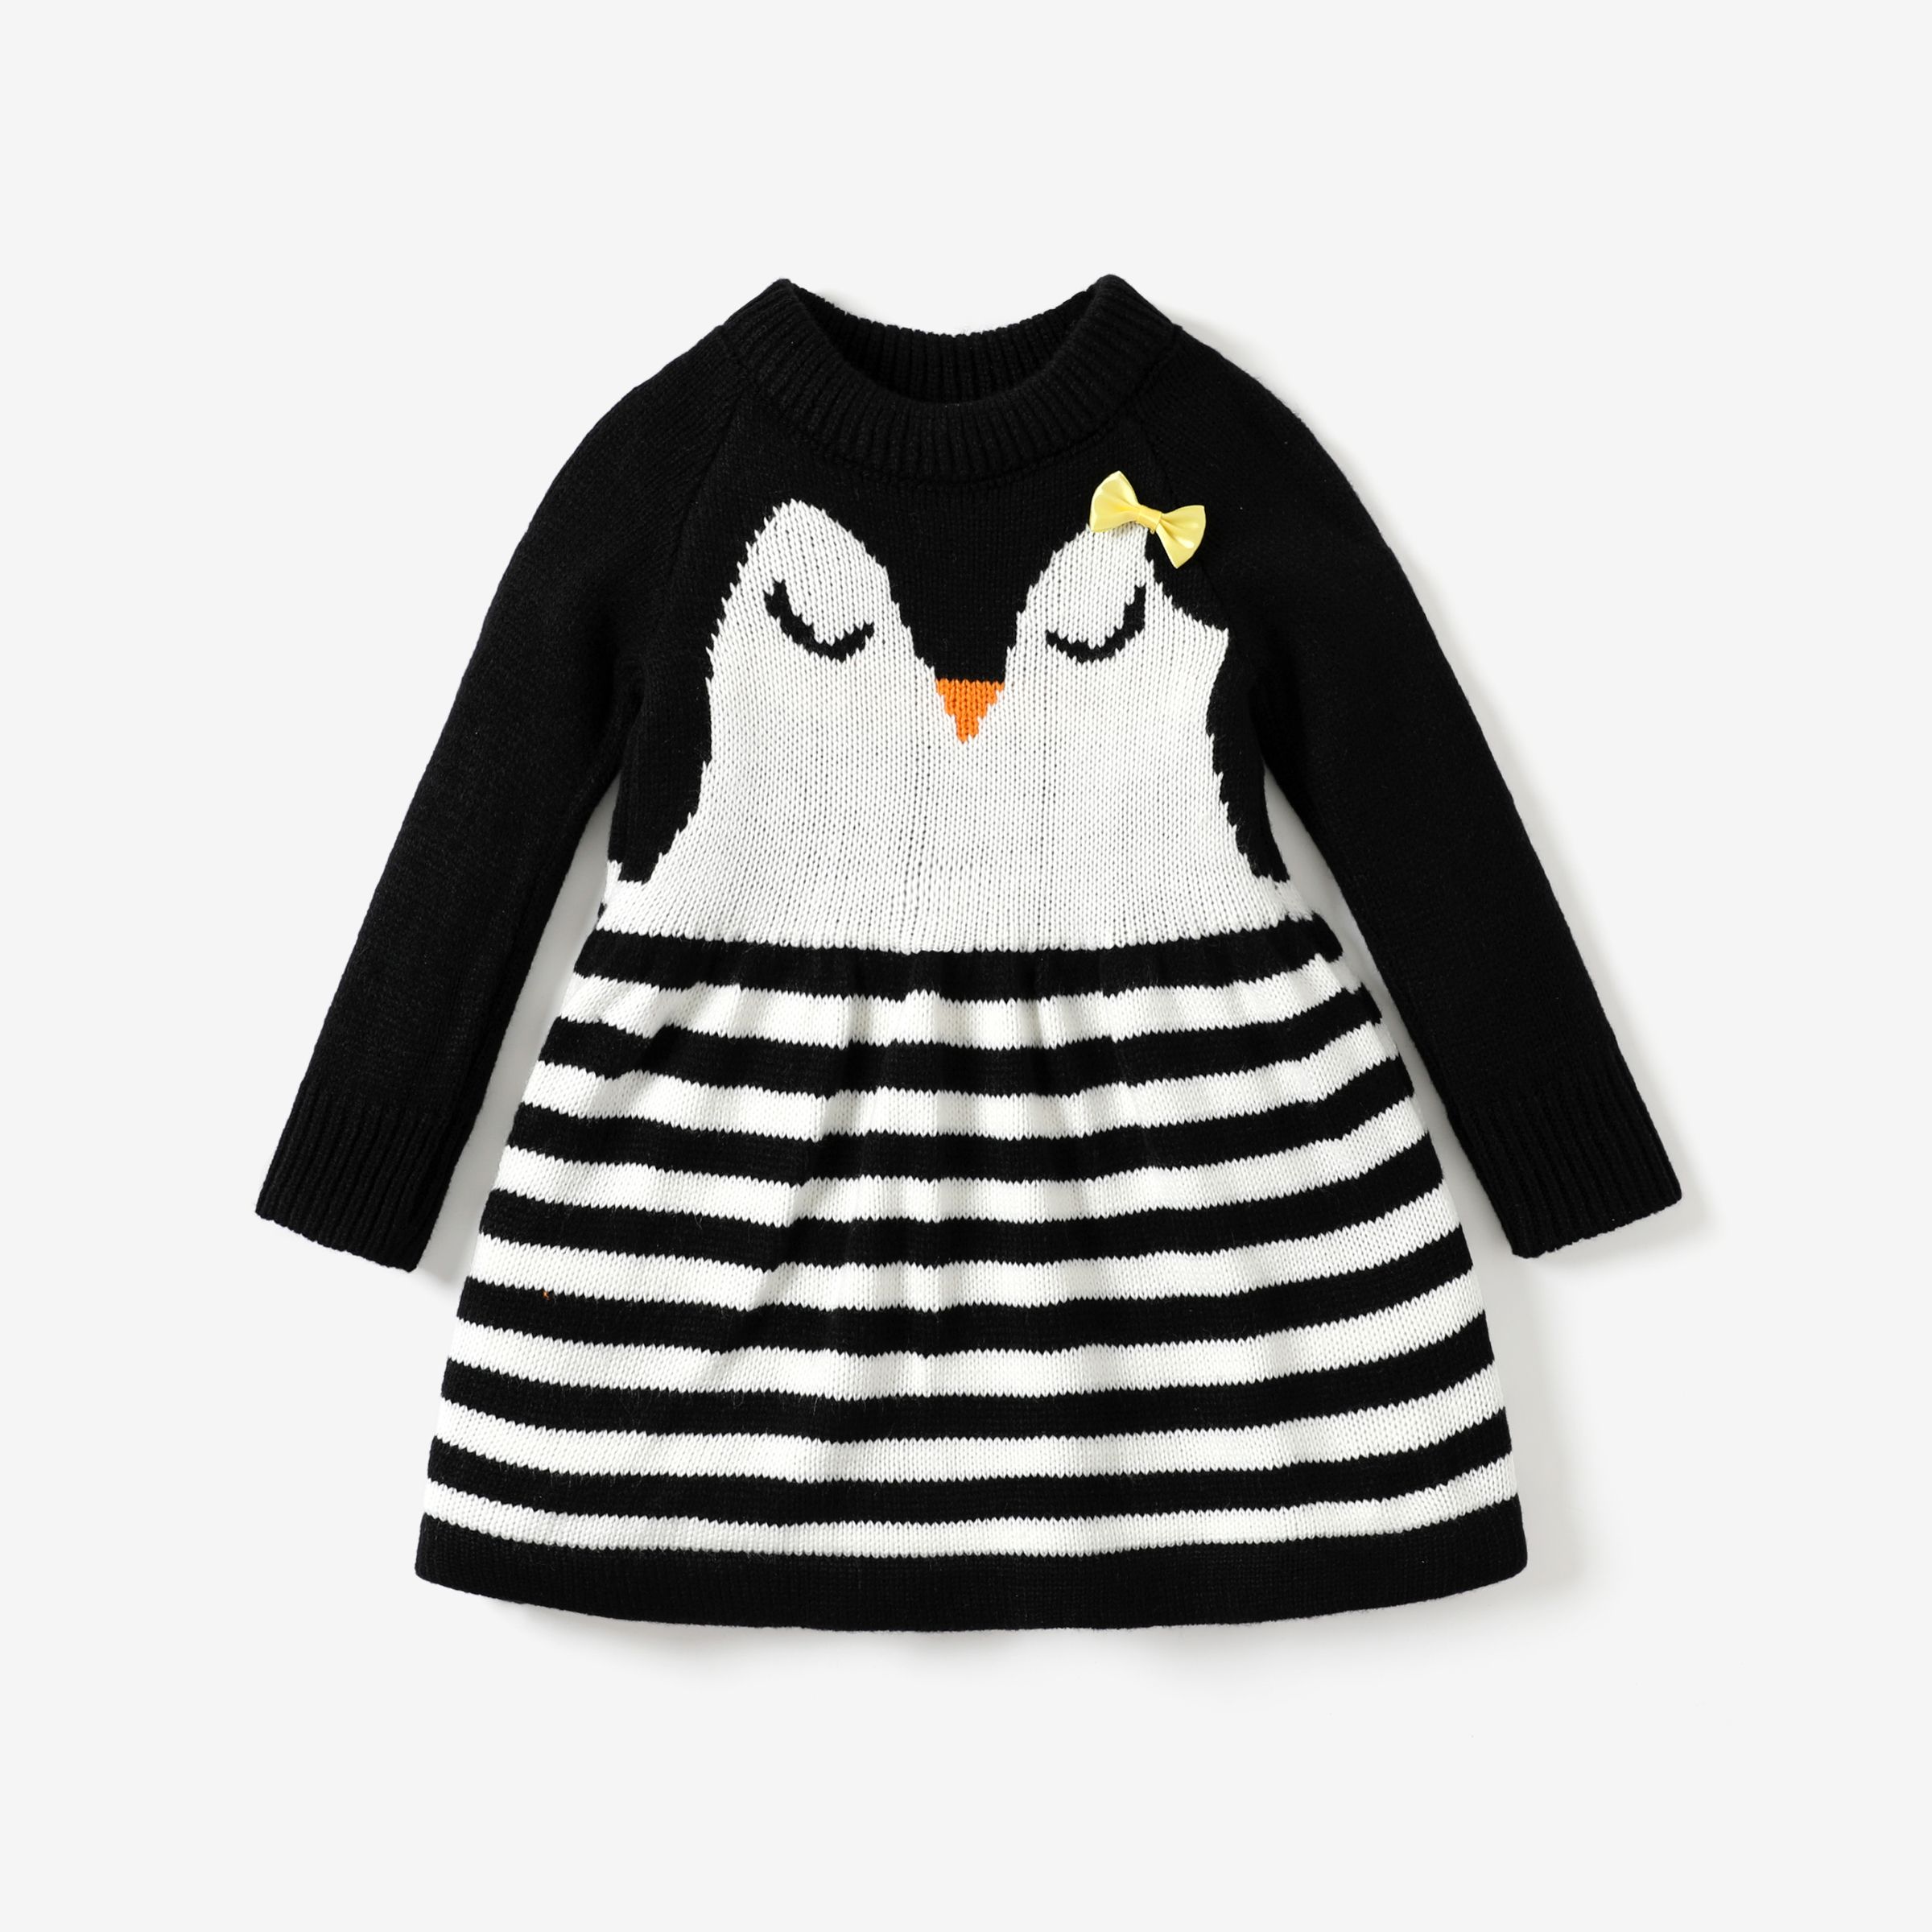 Bébé/Enfant En Bas âge Fille Mignon Pingouin Animal Motif 3D Hyper-Tactile Pull Robe